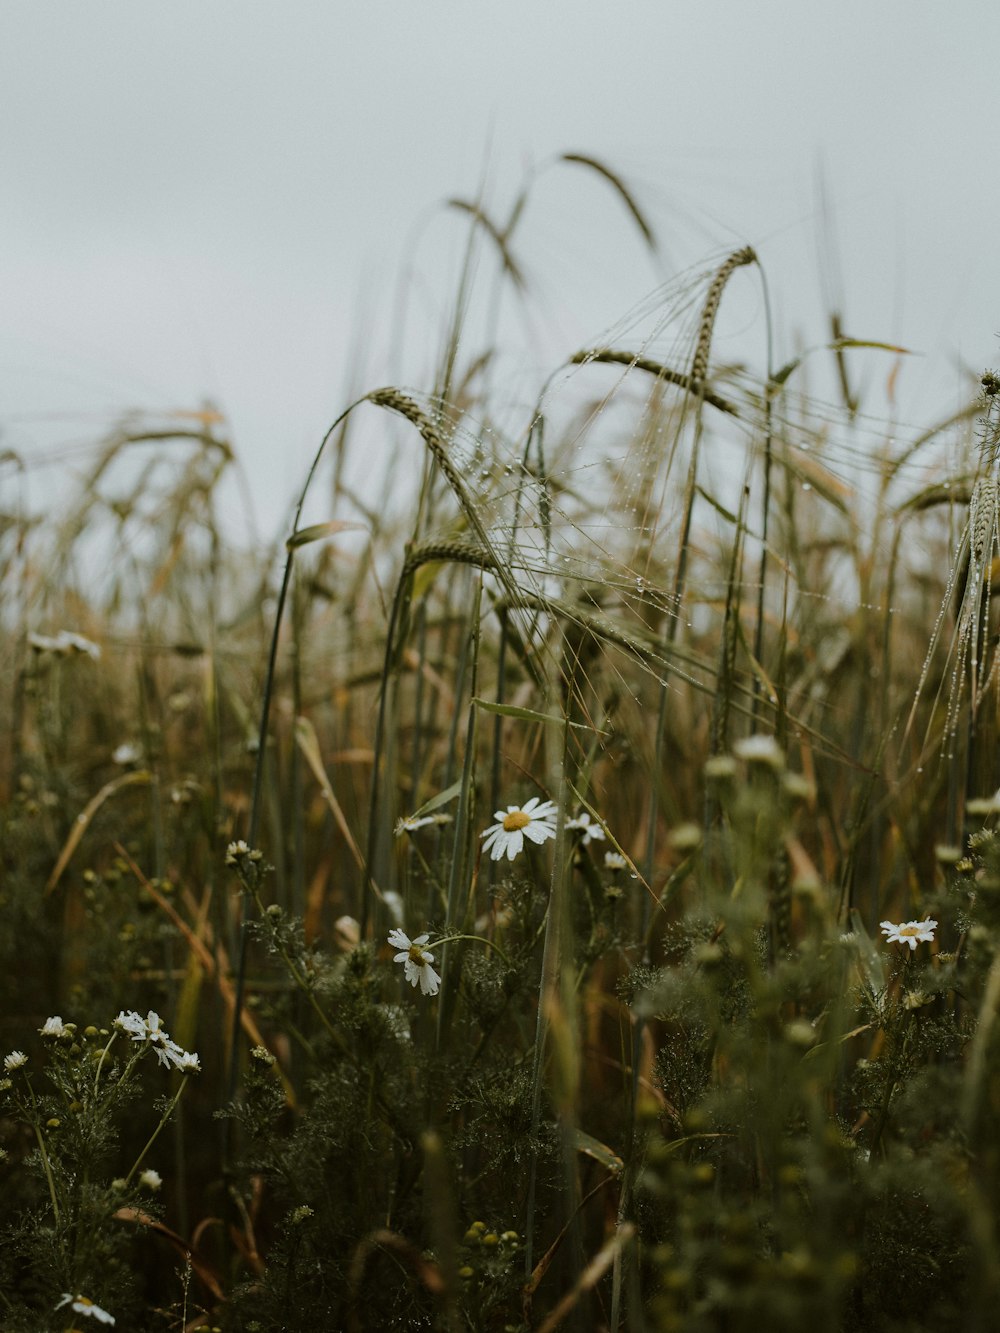 fiore bianco nel mezzo del campo di erba marrone